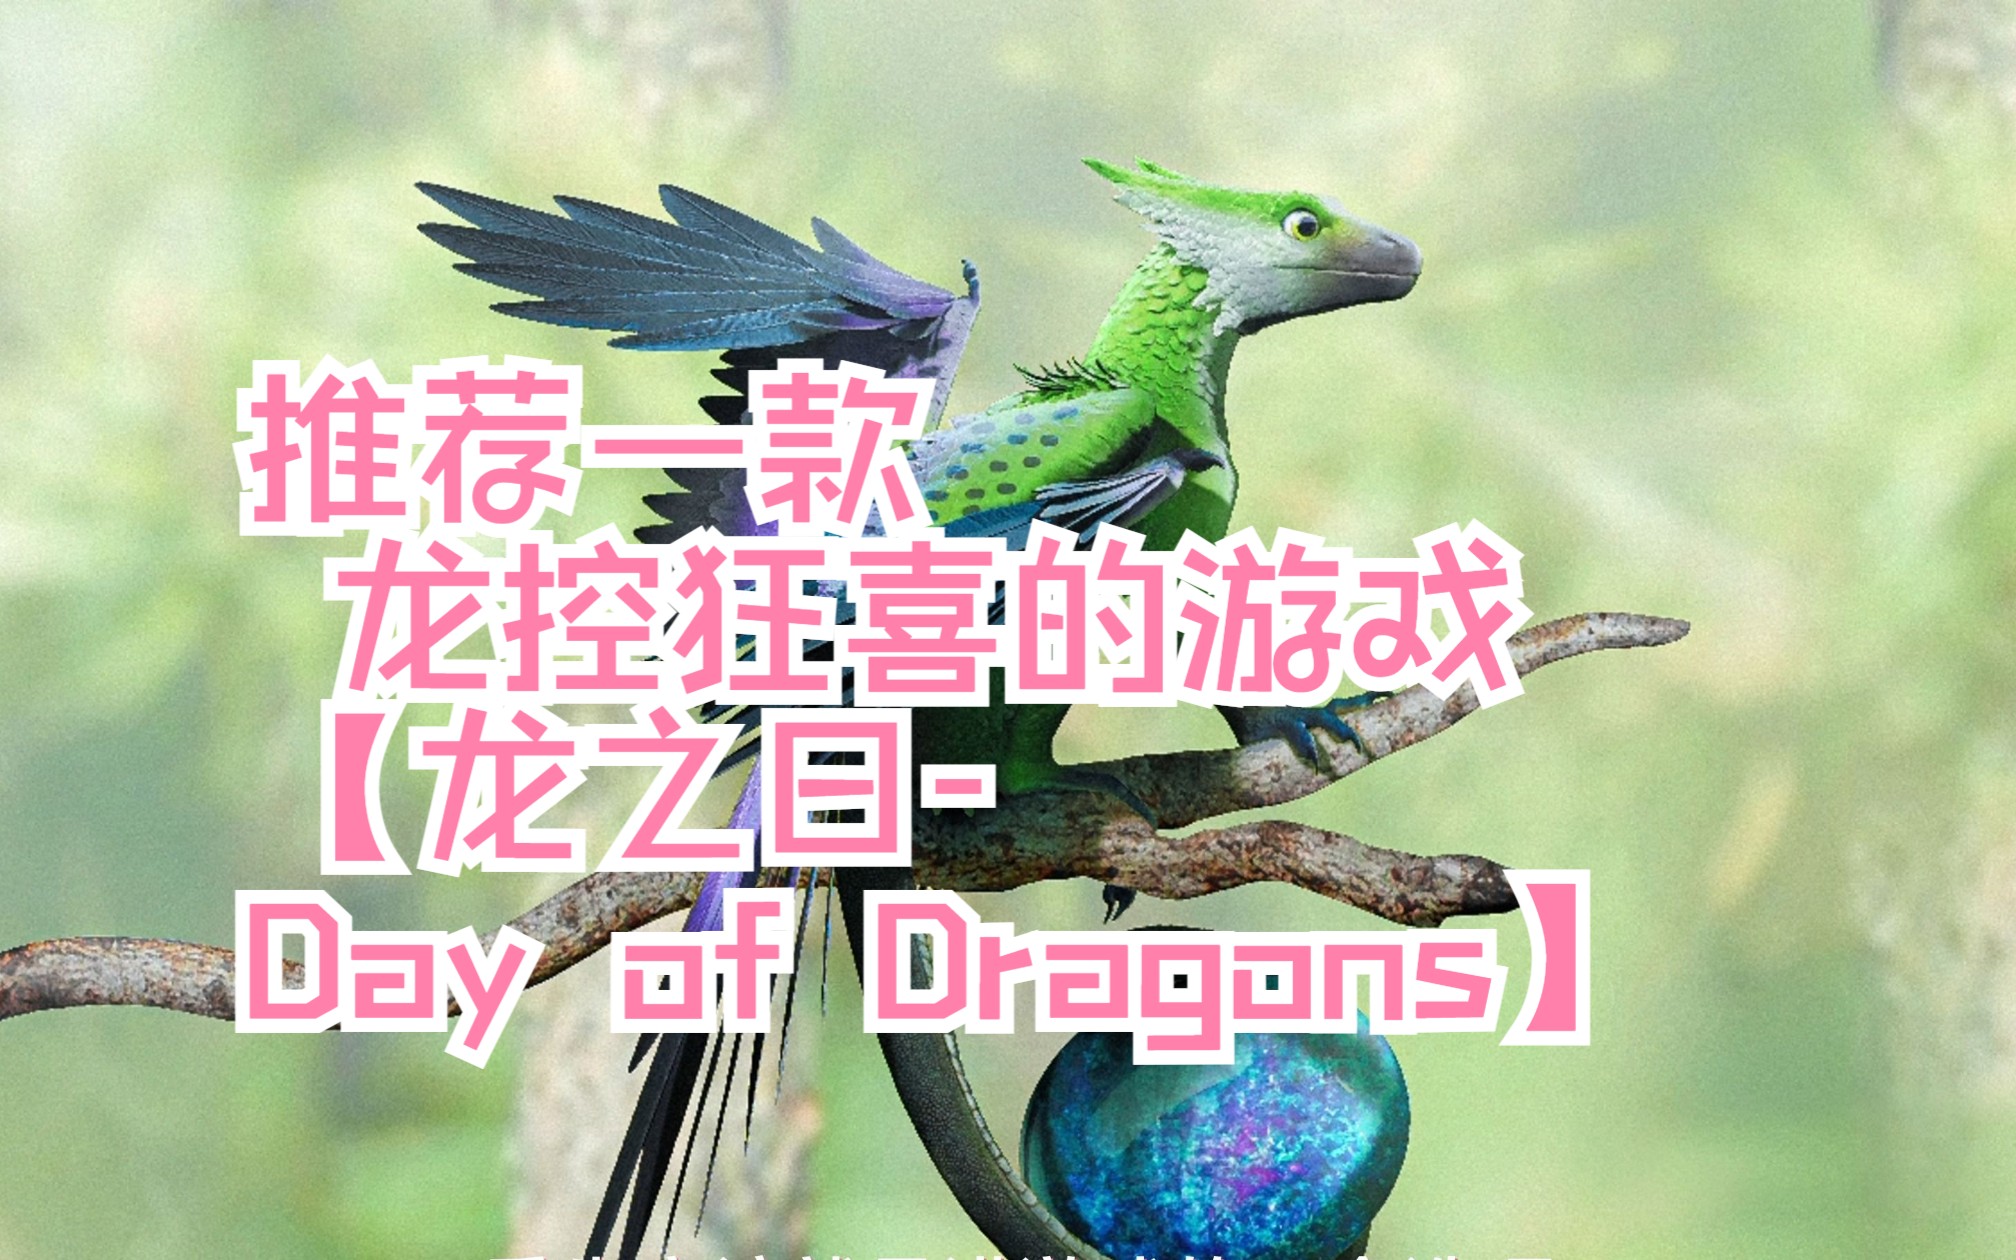 [图]【龙之日Day of Dragons】龙控狂喜的游戏